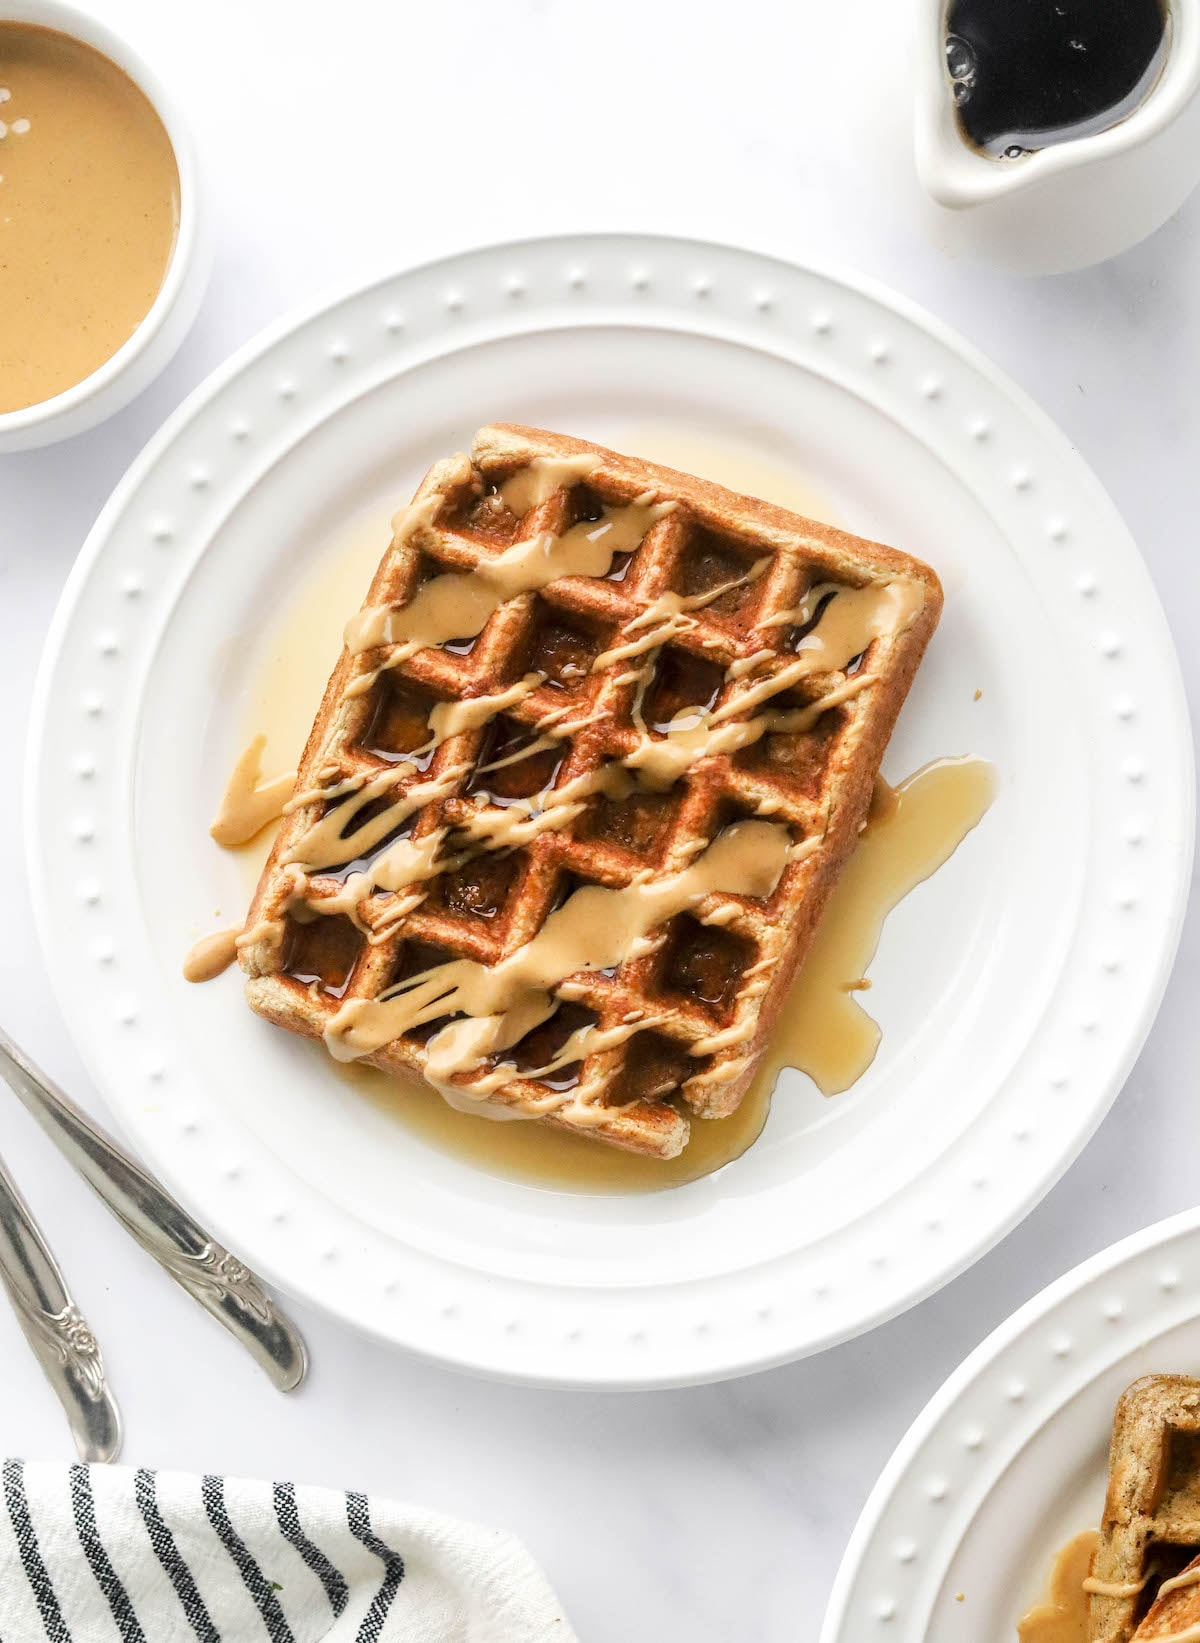 Uma foto aérea olhando para um prato com um waffle de proteína retangular que foi regado com xarope de ácer e manteiga de amendoim.